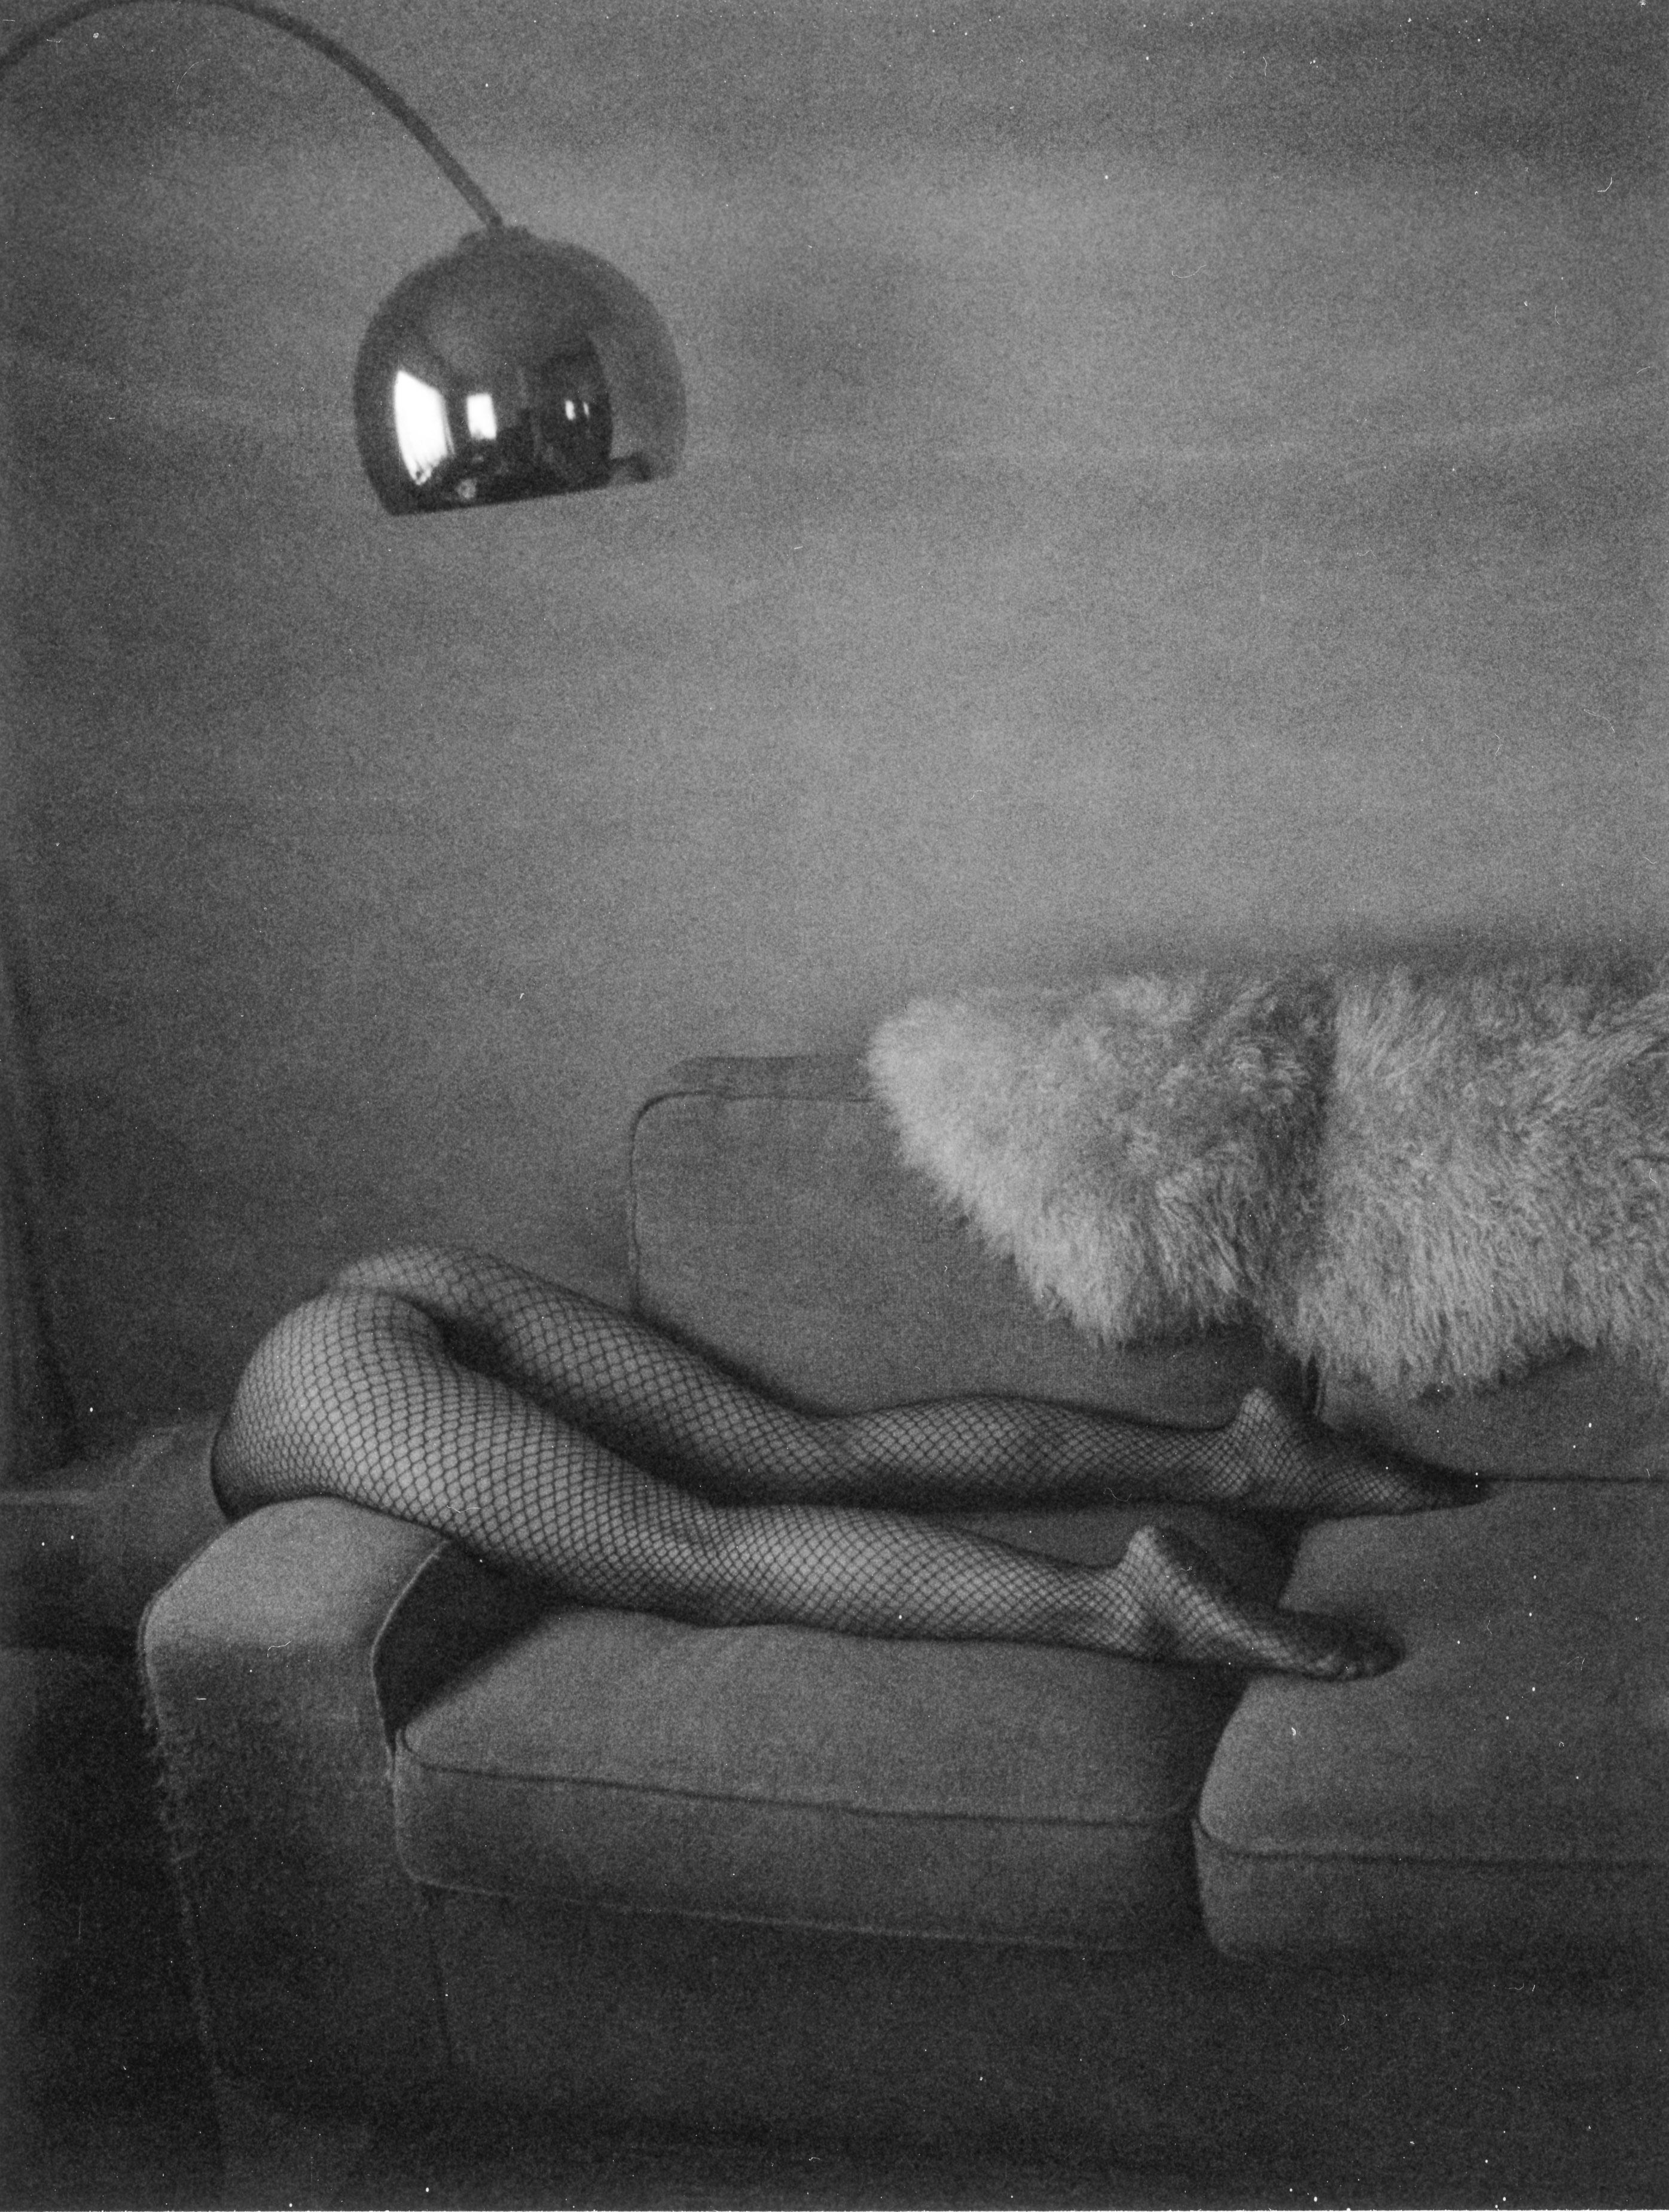 Kirsten Thys van den Audenaerde Nude Photograph - Styrofoam - Contemporary, Nude, Women, Polaroid, 21st Century